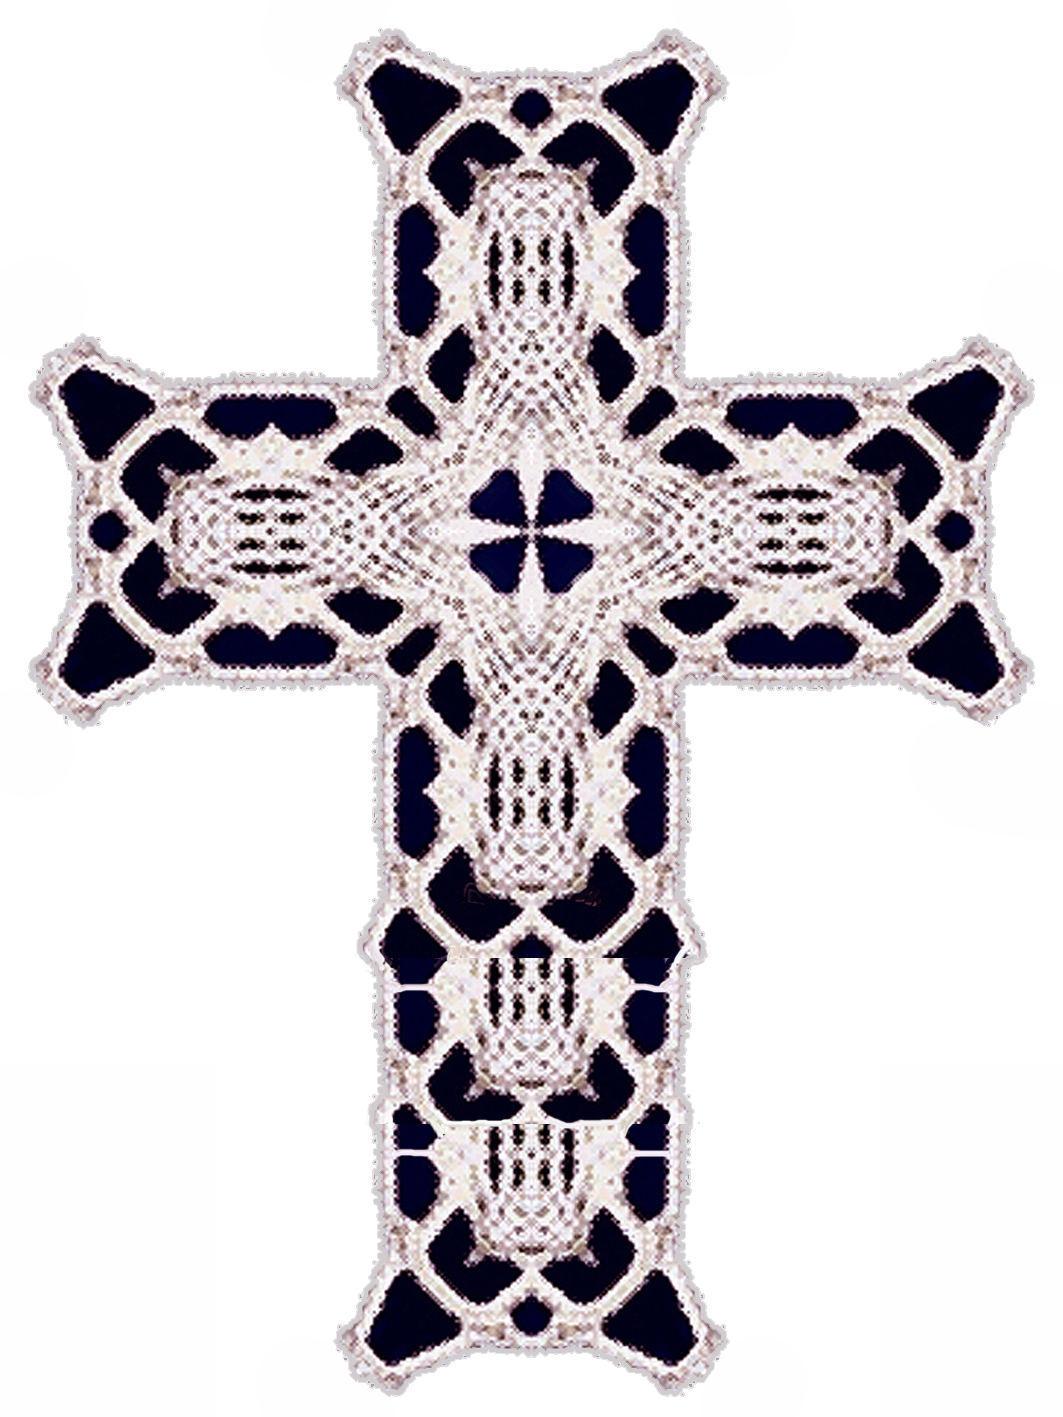 crucifix clipart lace